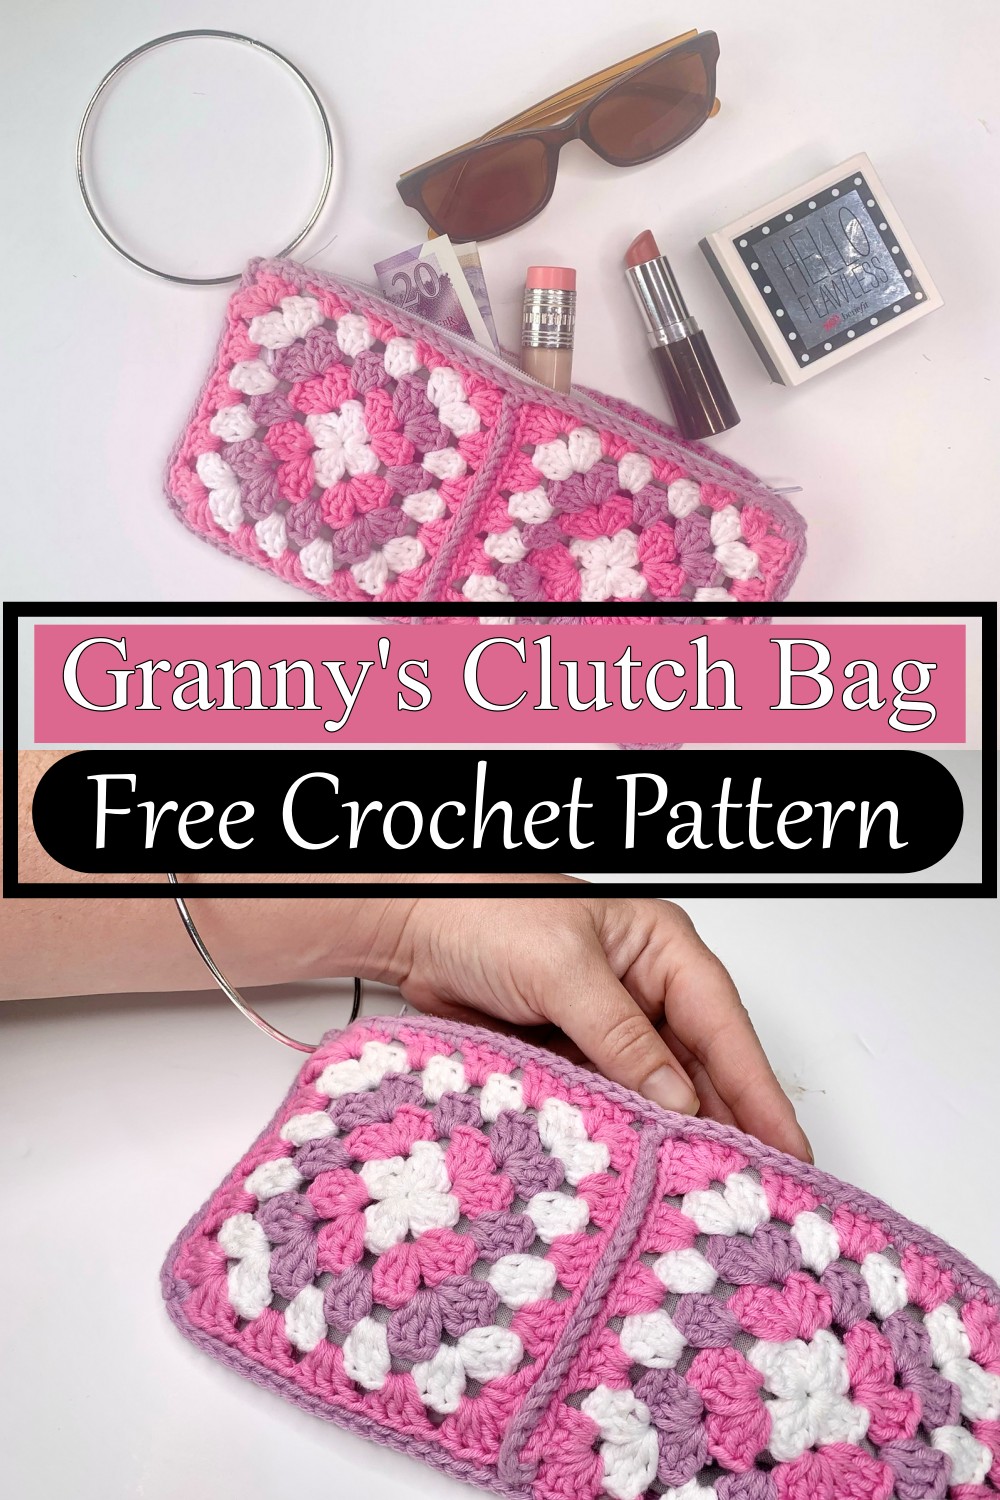 Granny's Clutch Bag